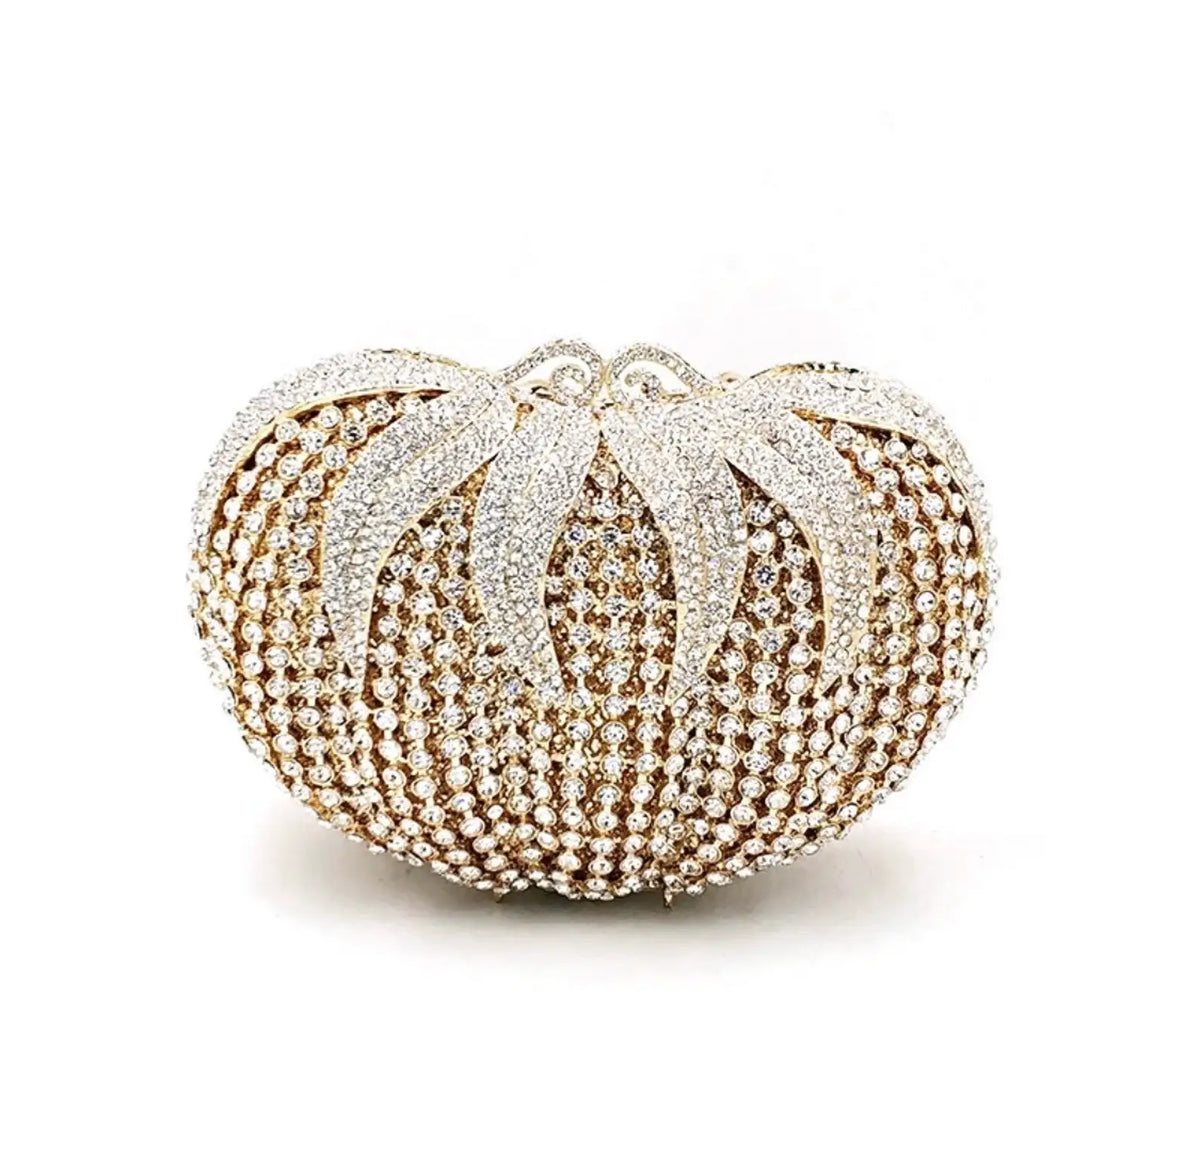 Swarovski Crystal Embellished Clutch Bag | Belle of The Ball Pumpkin | SIBYLLA DELPHICA